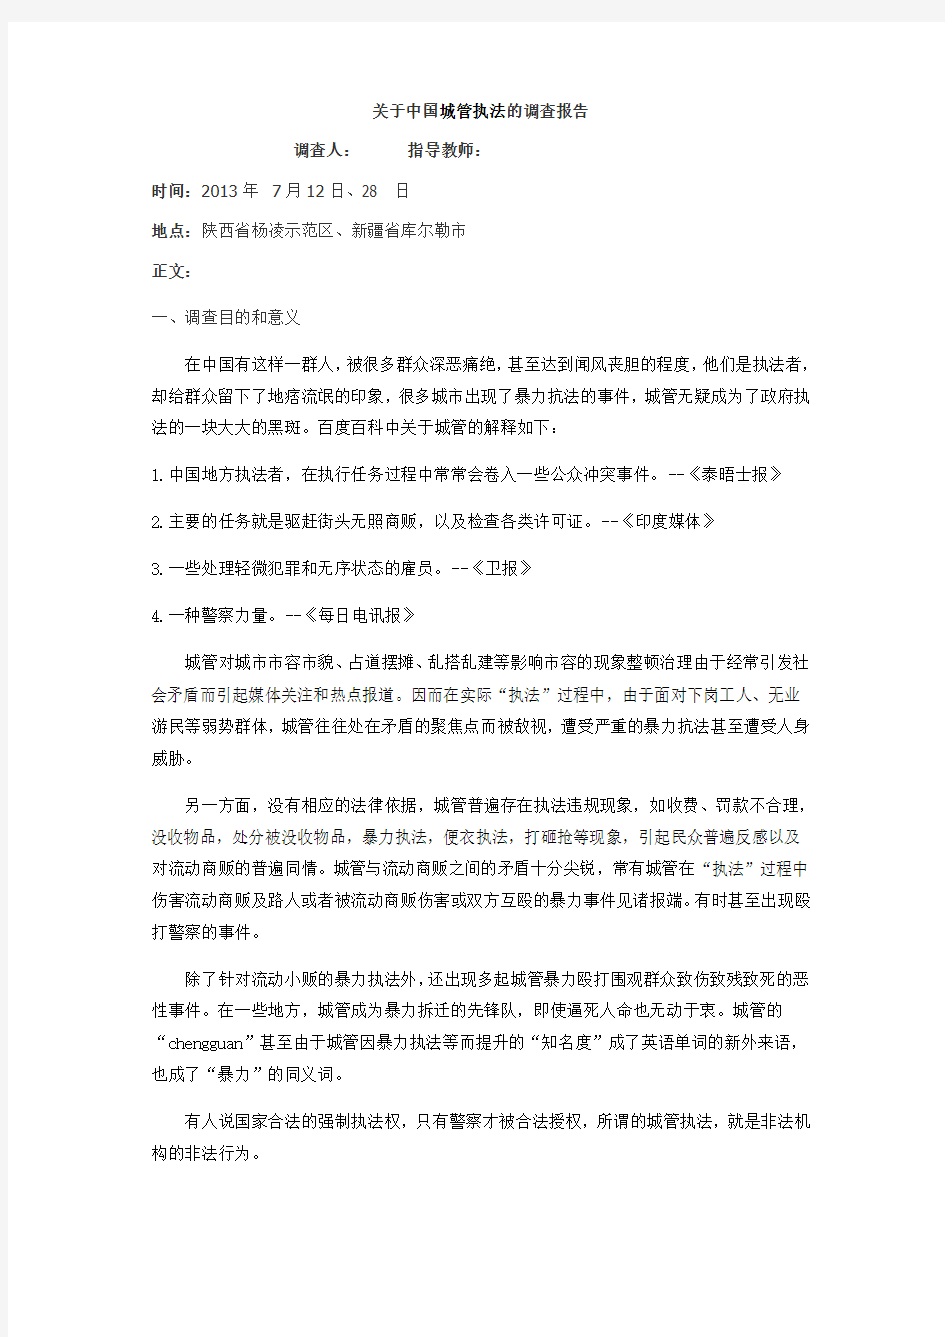 关于中国城管执法的调查报告